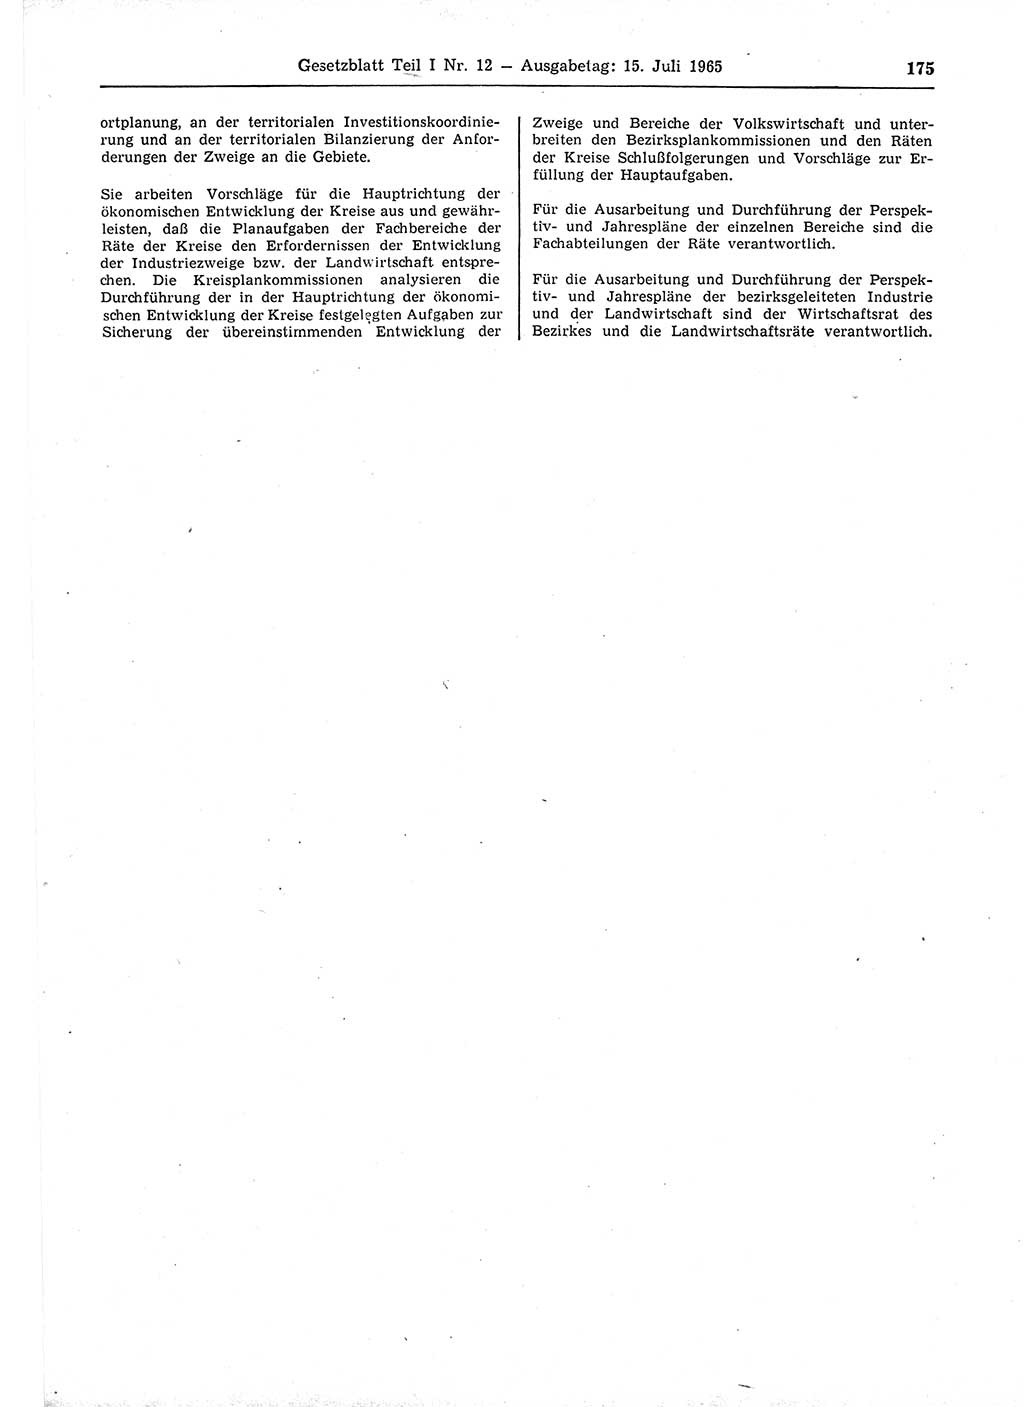 Gesetzblatt (GBl.) der Deutschen Demokratischen Republik (DDR) Teil Ⅰ 1965, Seite 175 (GBl. DDR Ⅰ 1965, S. 175)